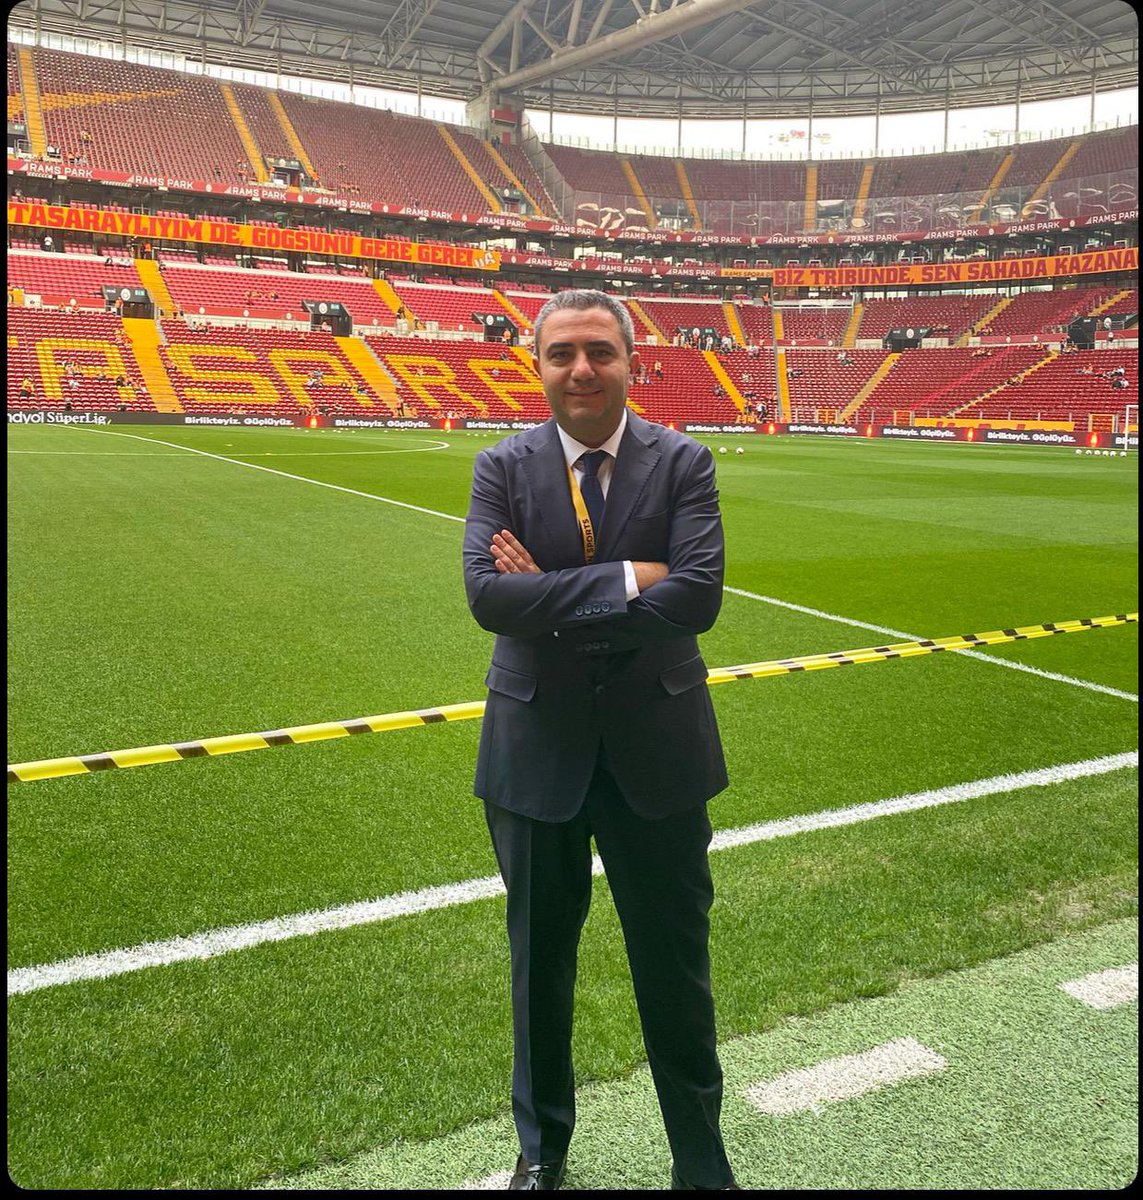 Süper Lige dönüyoruz! Galatasaray-Hatayspor ⏰ 20:30 @beINSPORTS_TR 🎙️ beklerim 👋🏻